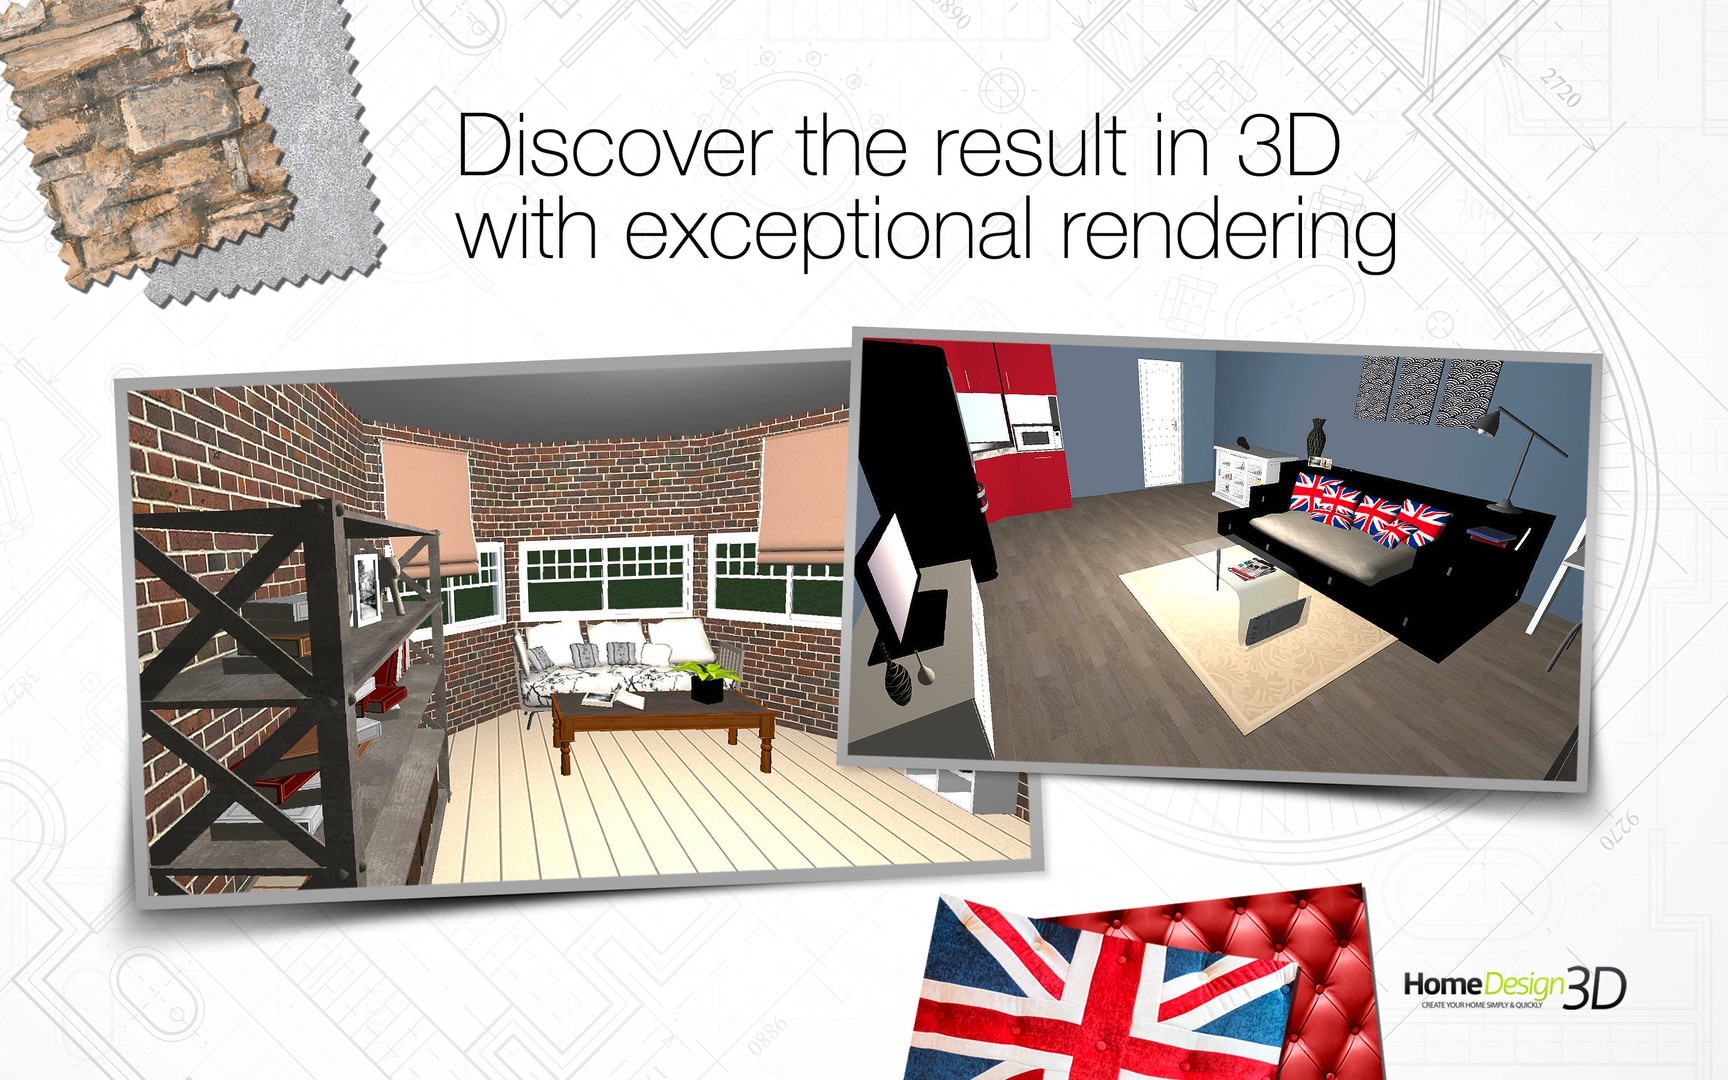  Home Design 3D Steam Key  GLOBAL G2A COM